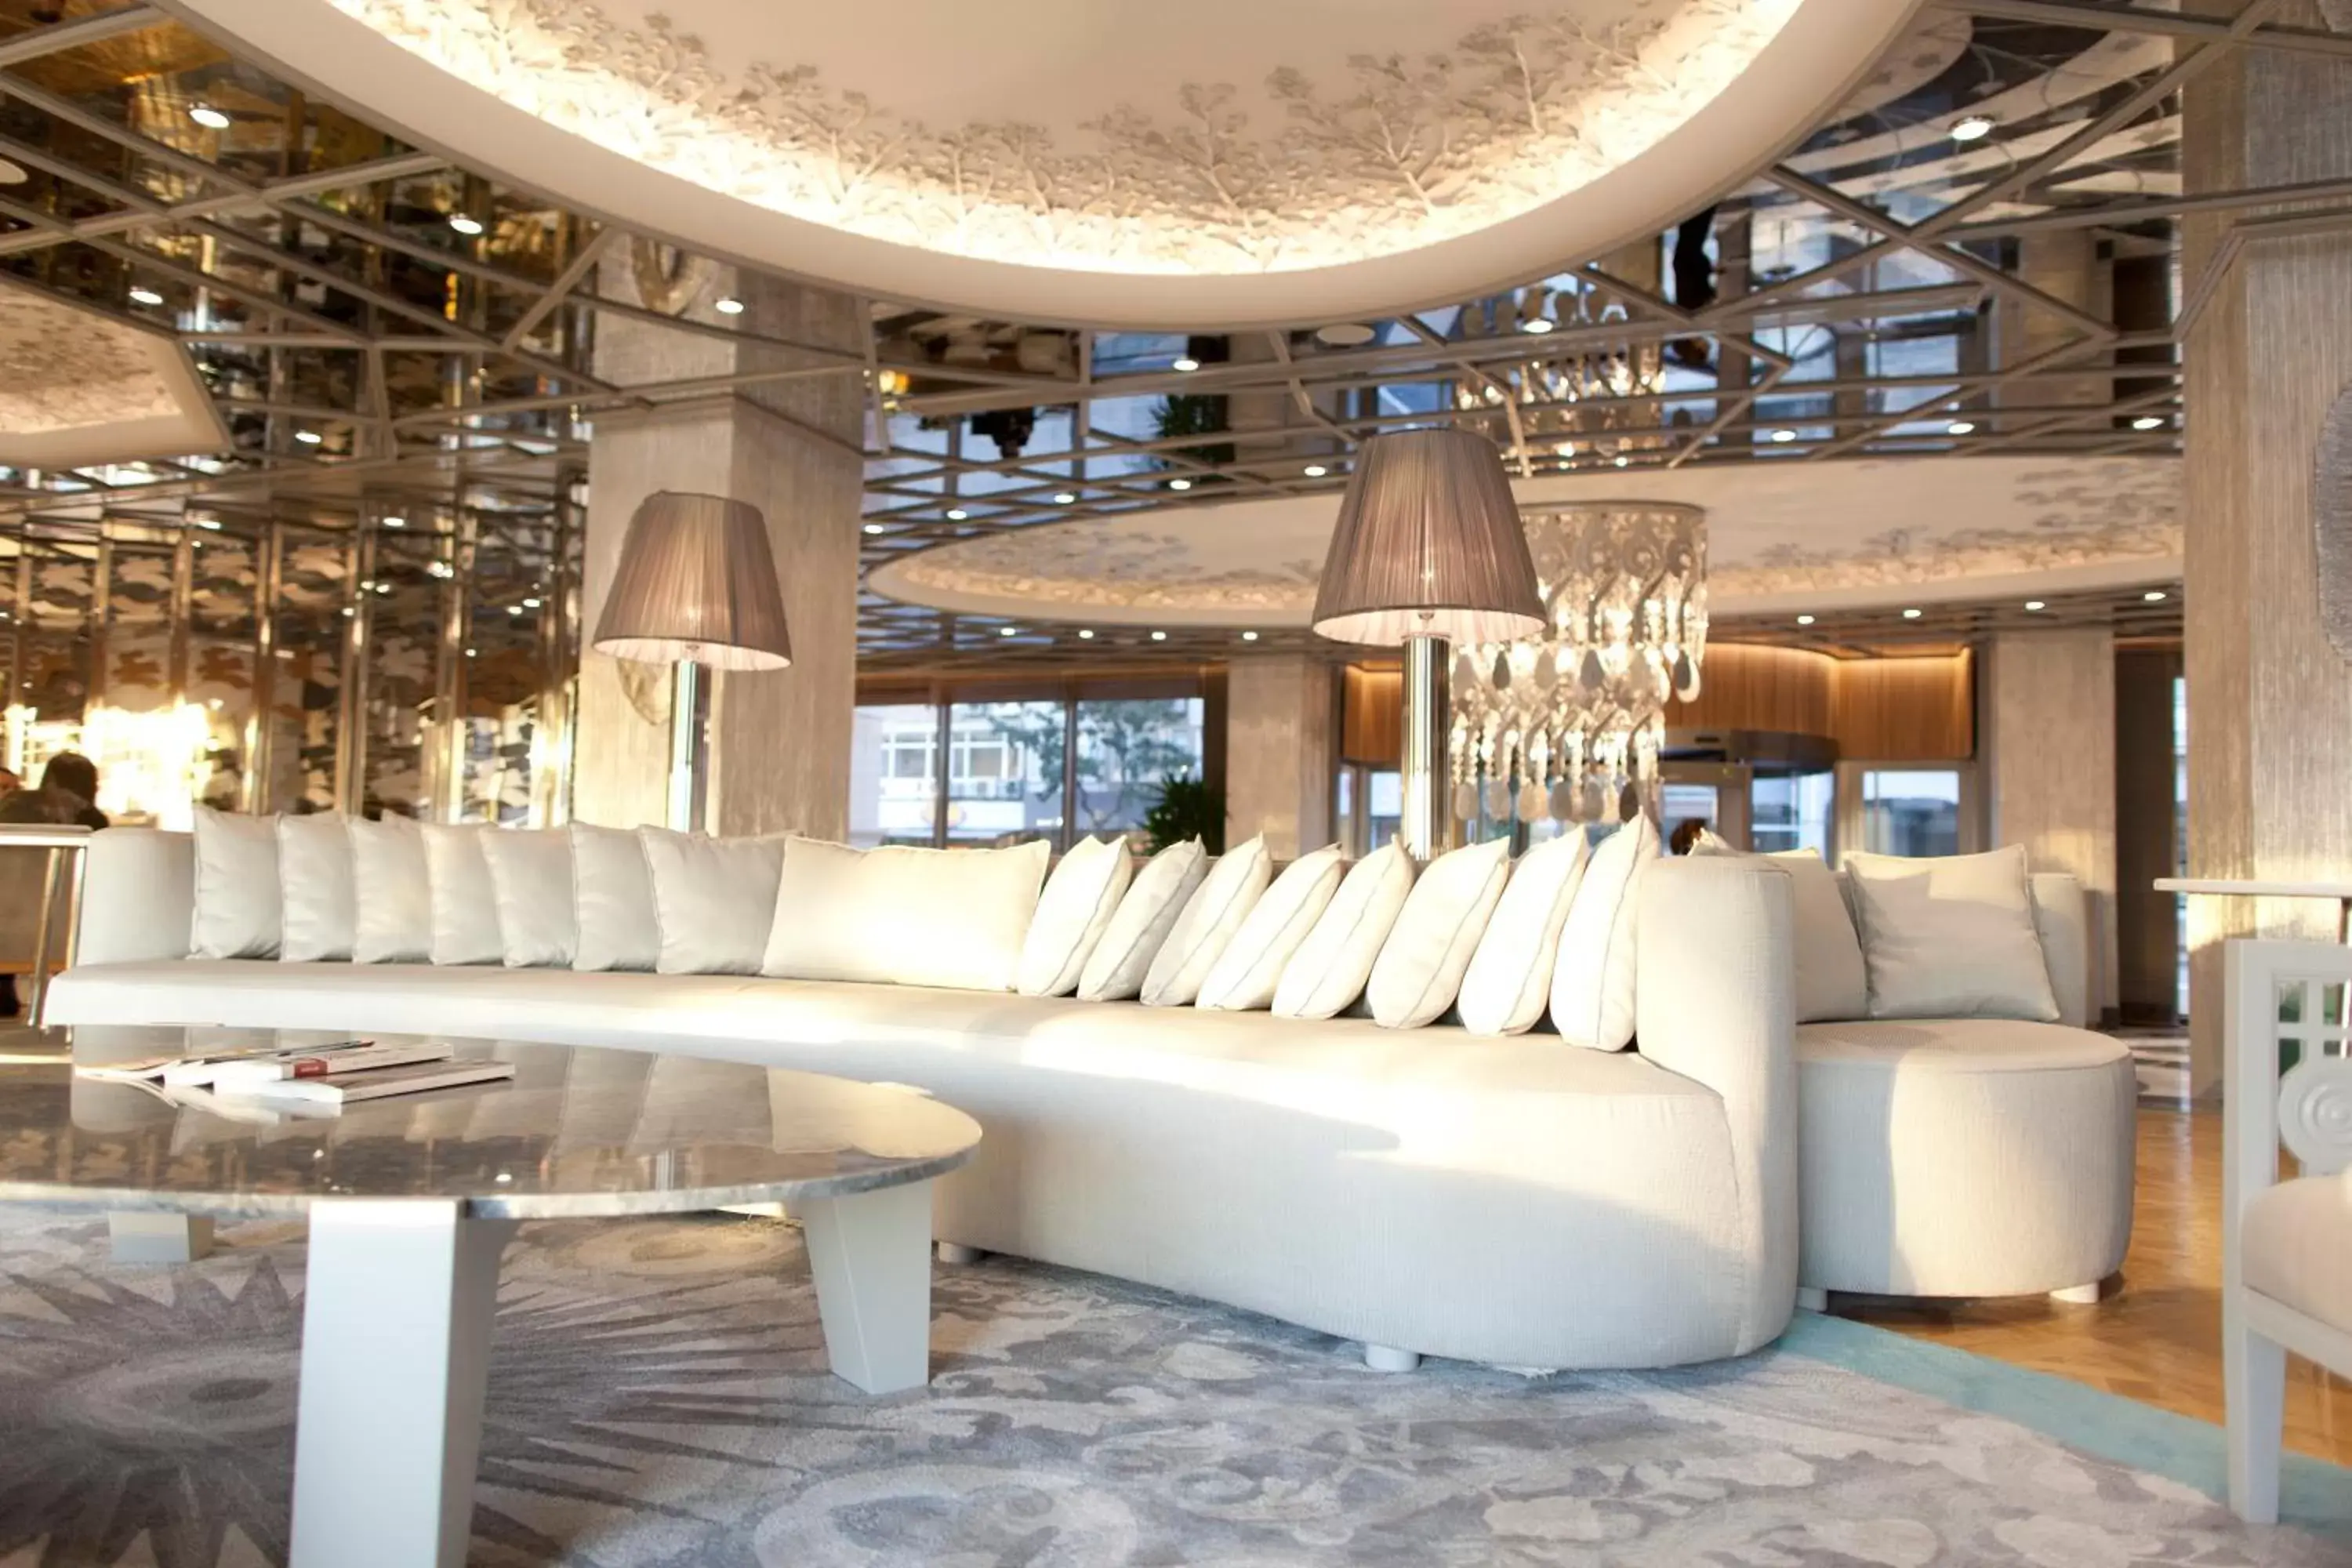 Lobby or reception in Wyndham Grand Istanbul Kalamış Marina Hotel